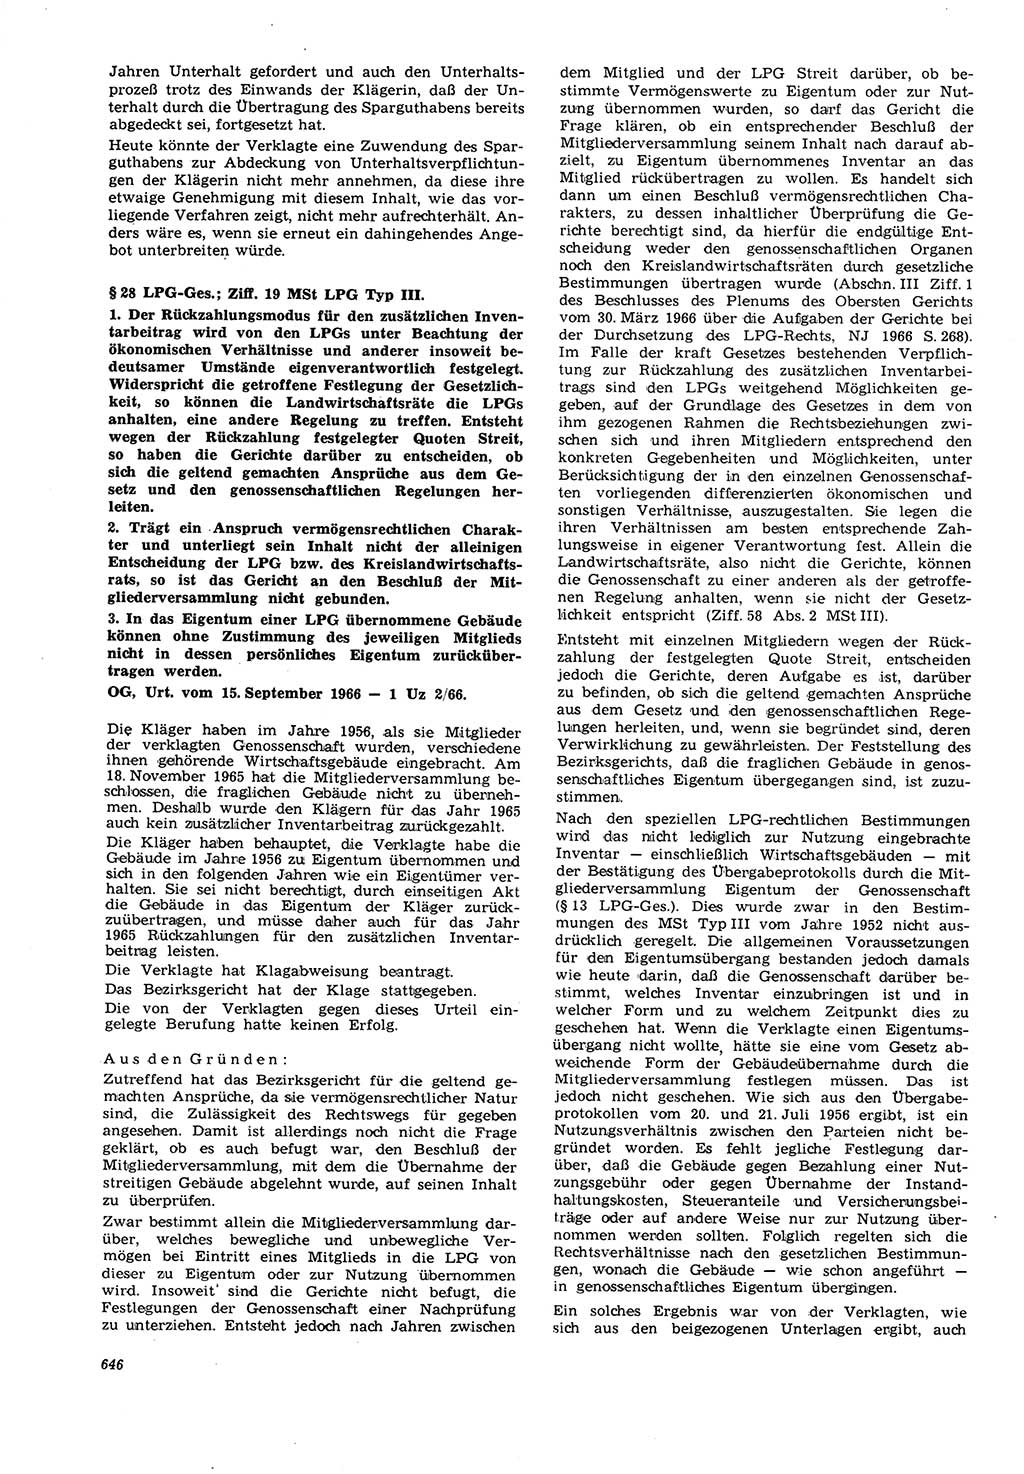 Neue Justiz (NJ), Zeitschrift für Recht und Rechtswissenschaft [Deutsche Demokratische Republik (DDR)], 21. Jahrgang 1967, Seite 646 (NJ DDR 1967, S. 646)